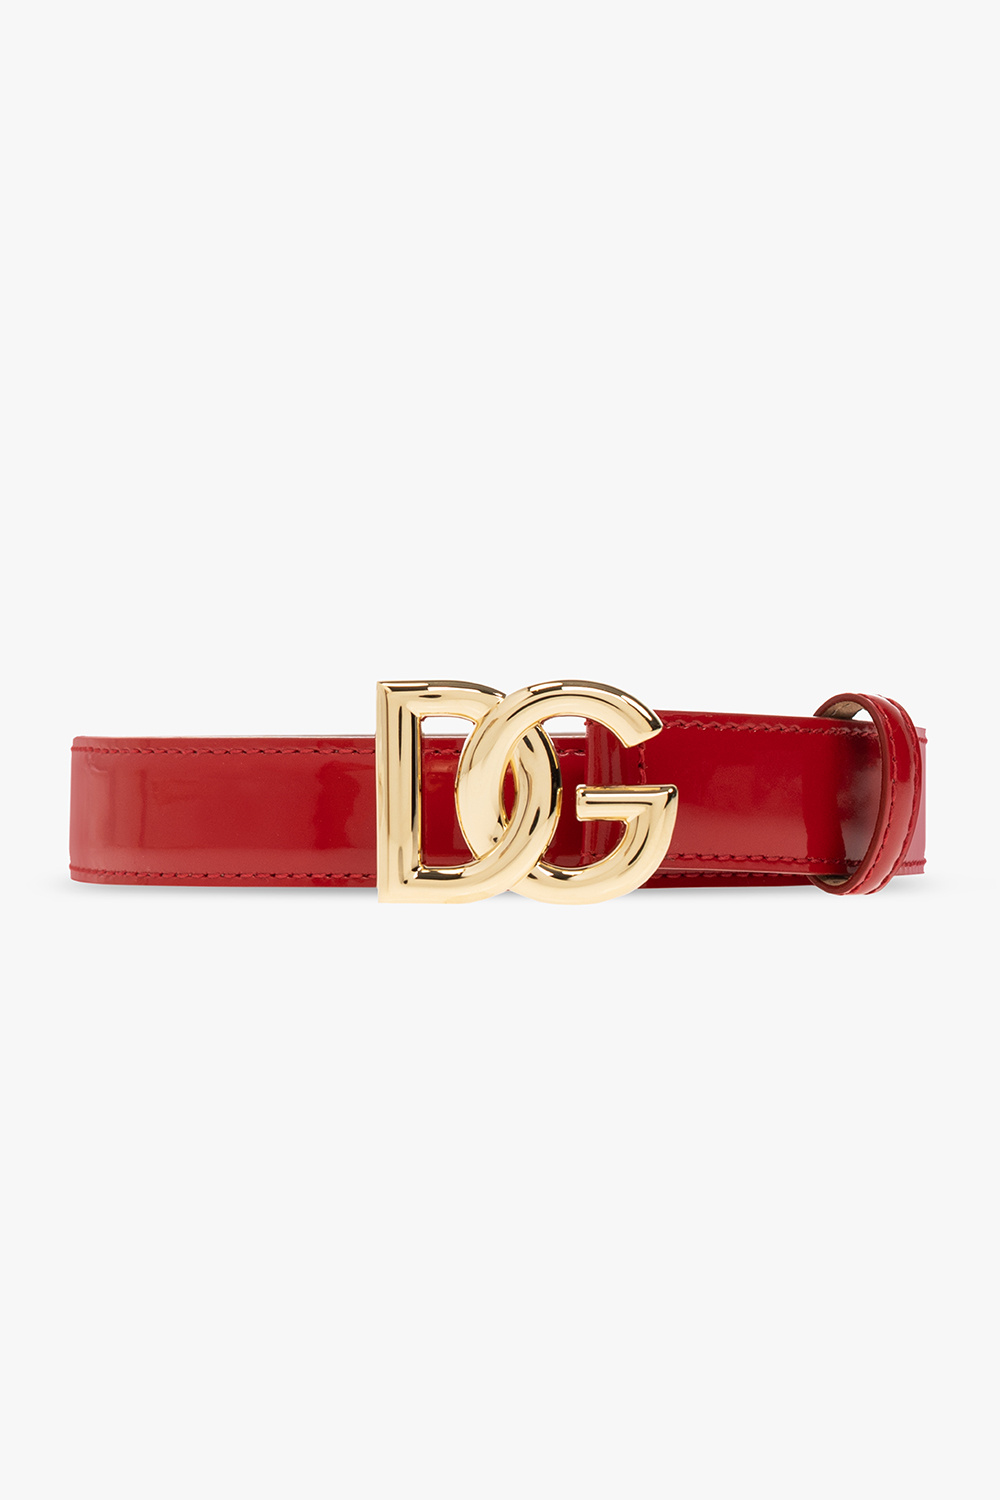 plaque pointed - Red Leather belt with logo Dolce u0026 Gabbana logo - Dolce u0026  Gabbana striped logo-embroidered jumper - toe pumps Gold -  VbjdevelopmentsShops Nepal